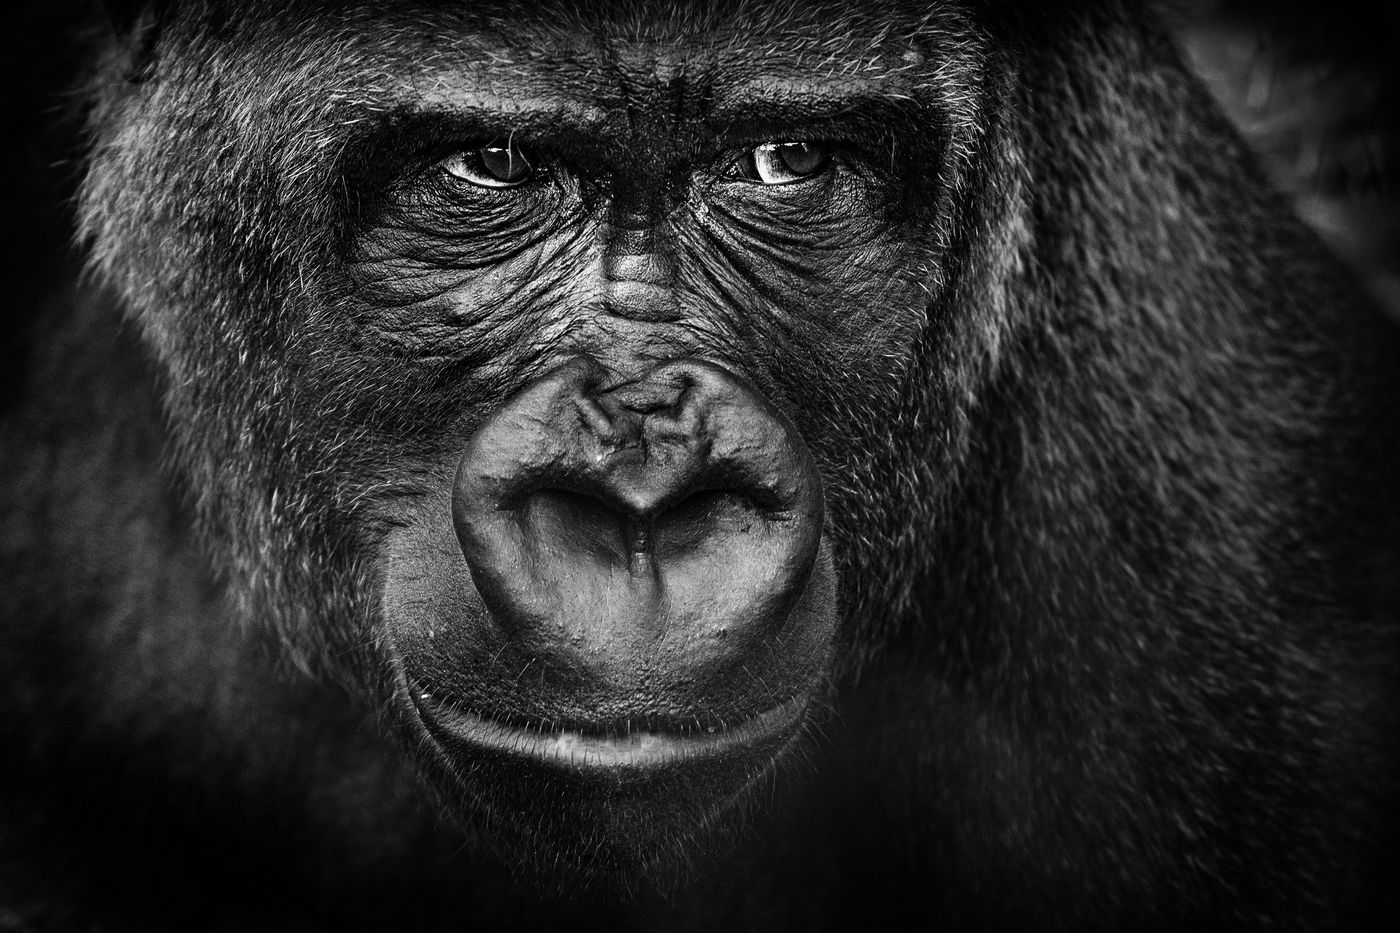 Een close-up van een gorilla. © Jeffrey Van Daele